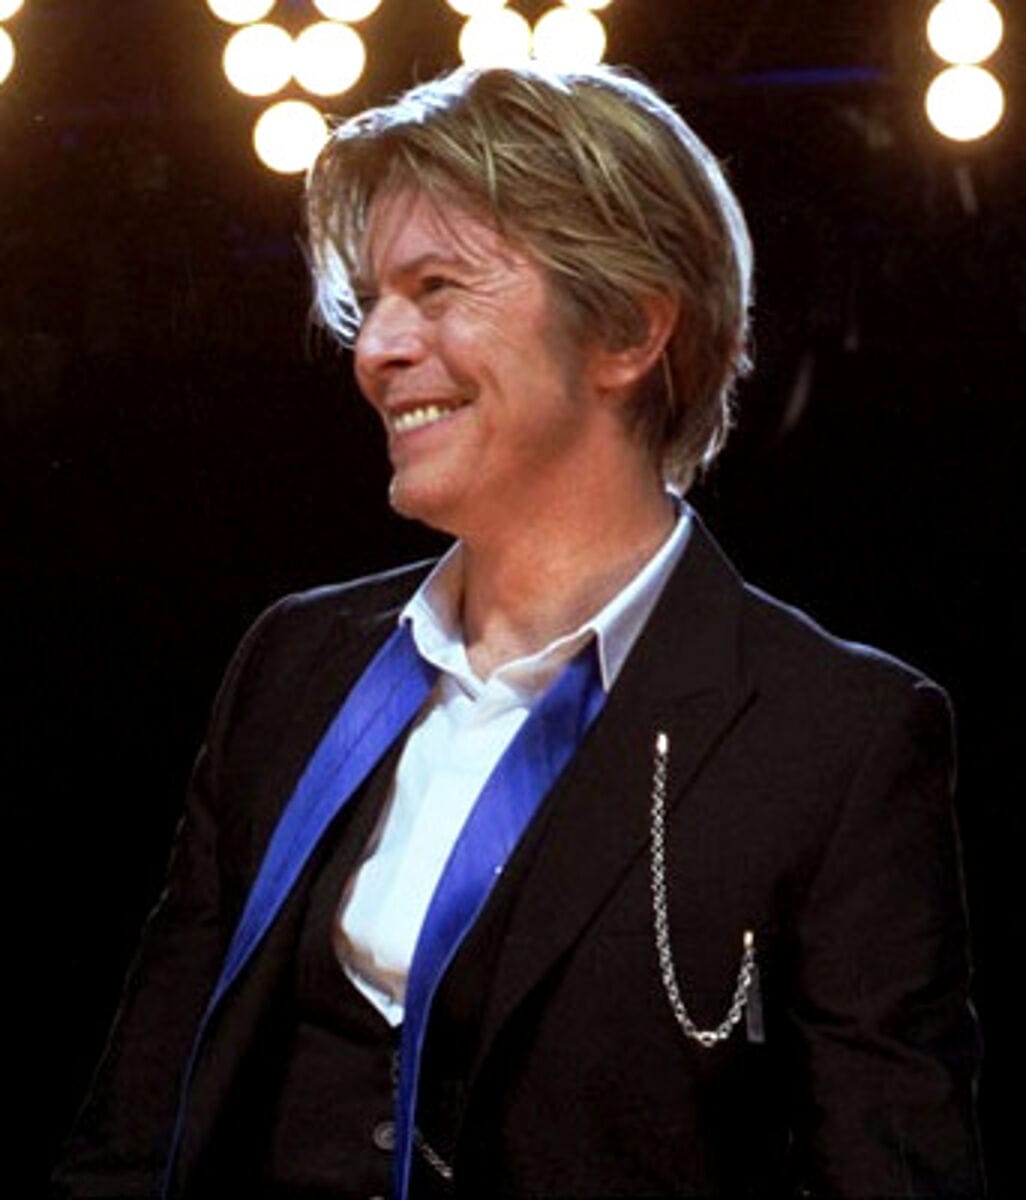 David Bowie - Famous Singer